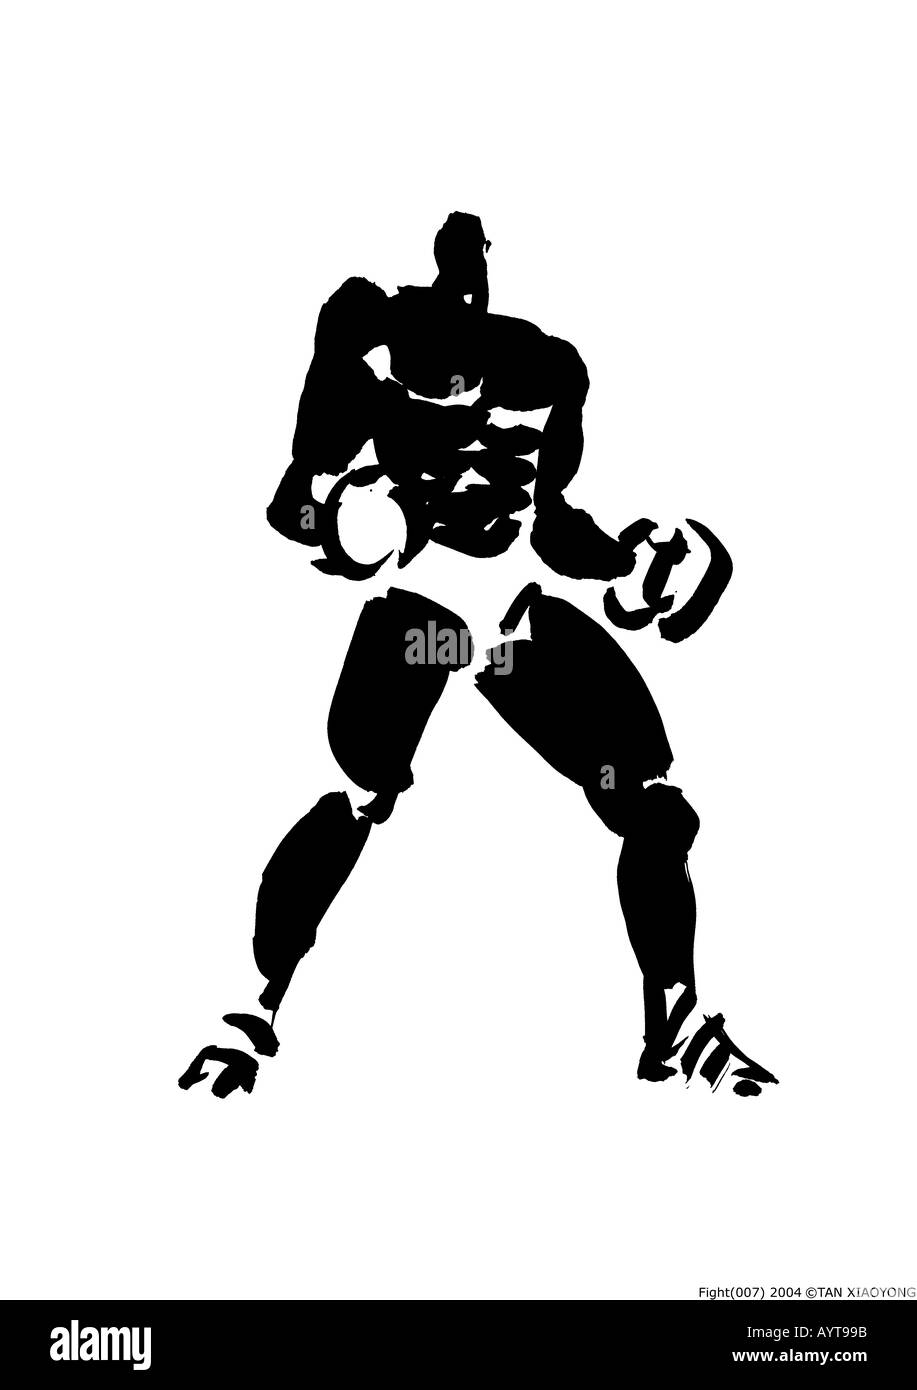 L'encre noire artistique peinture d'un combat de boxe Banque D'Images